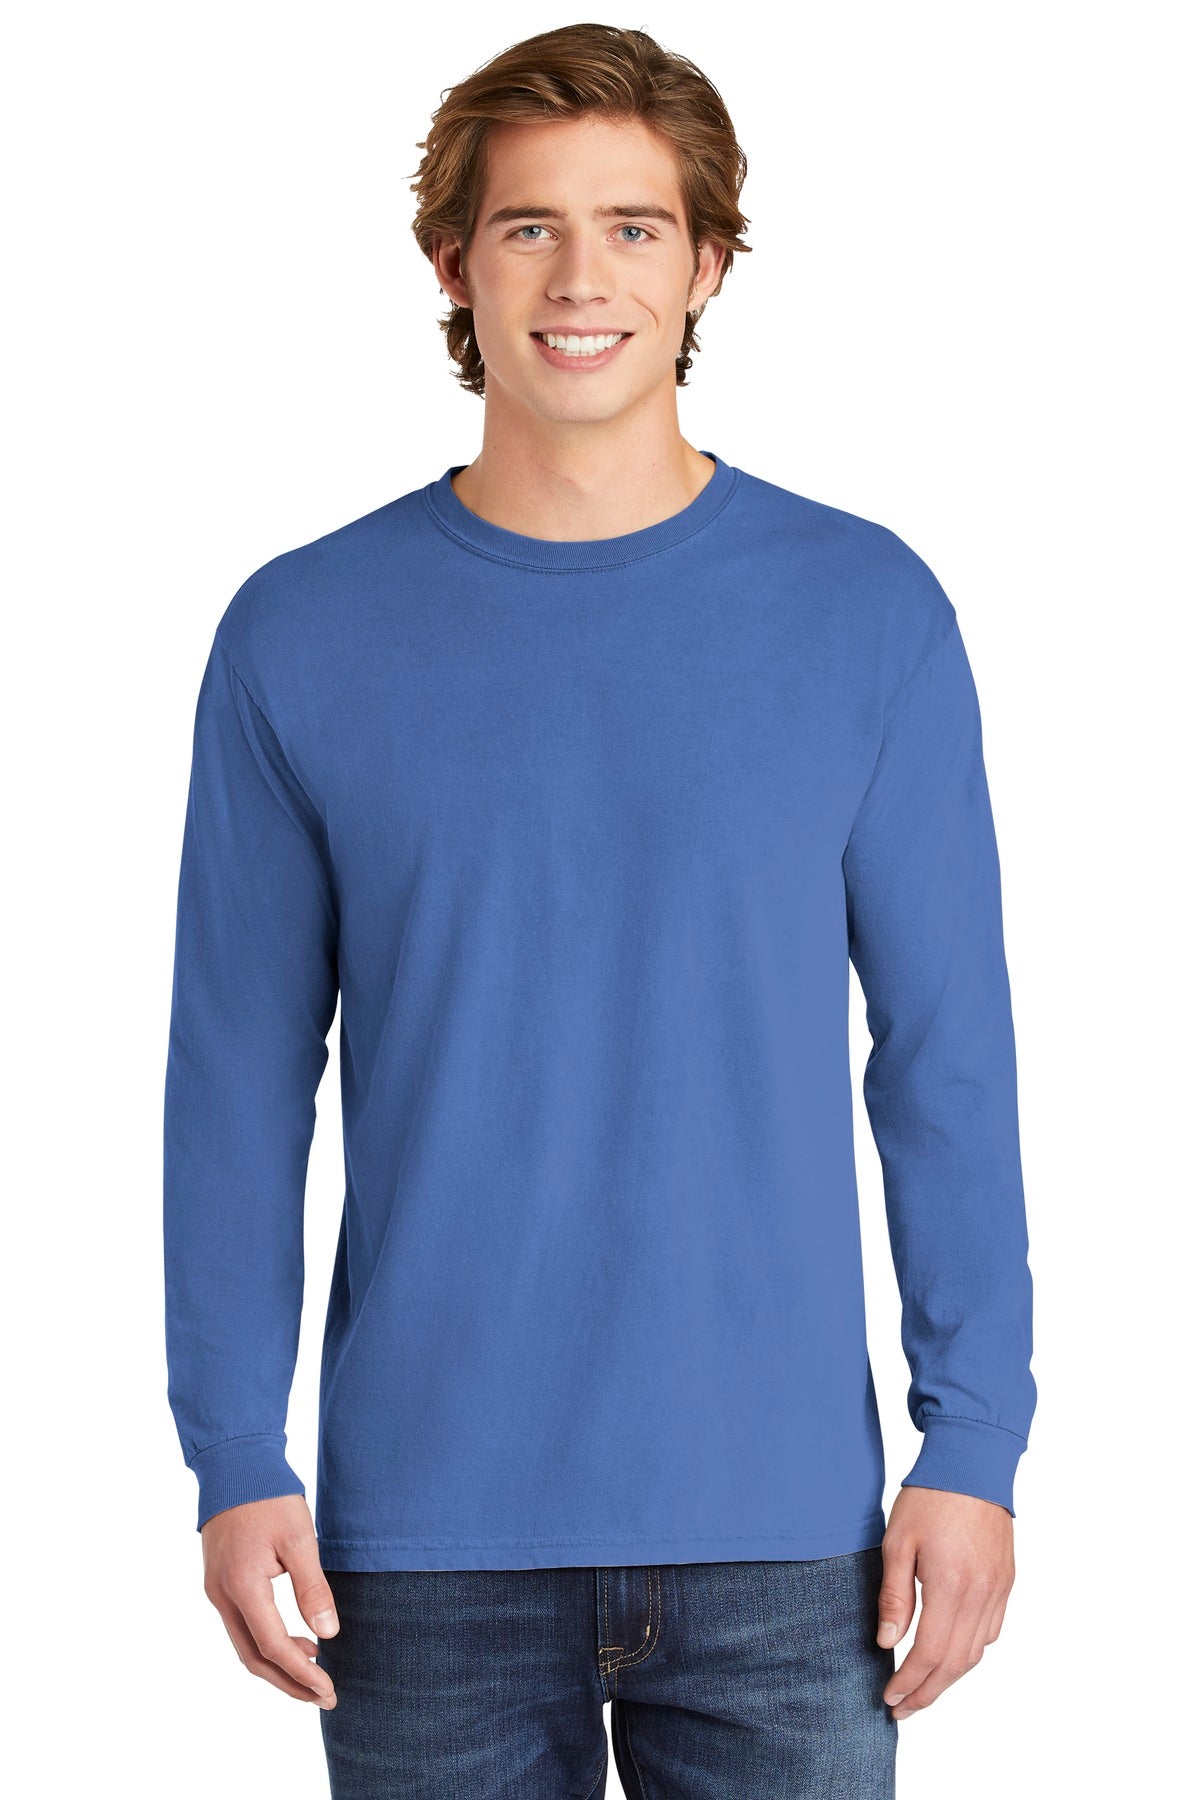 T-Shirts Flo Blue Comfort Colors